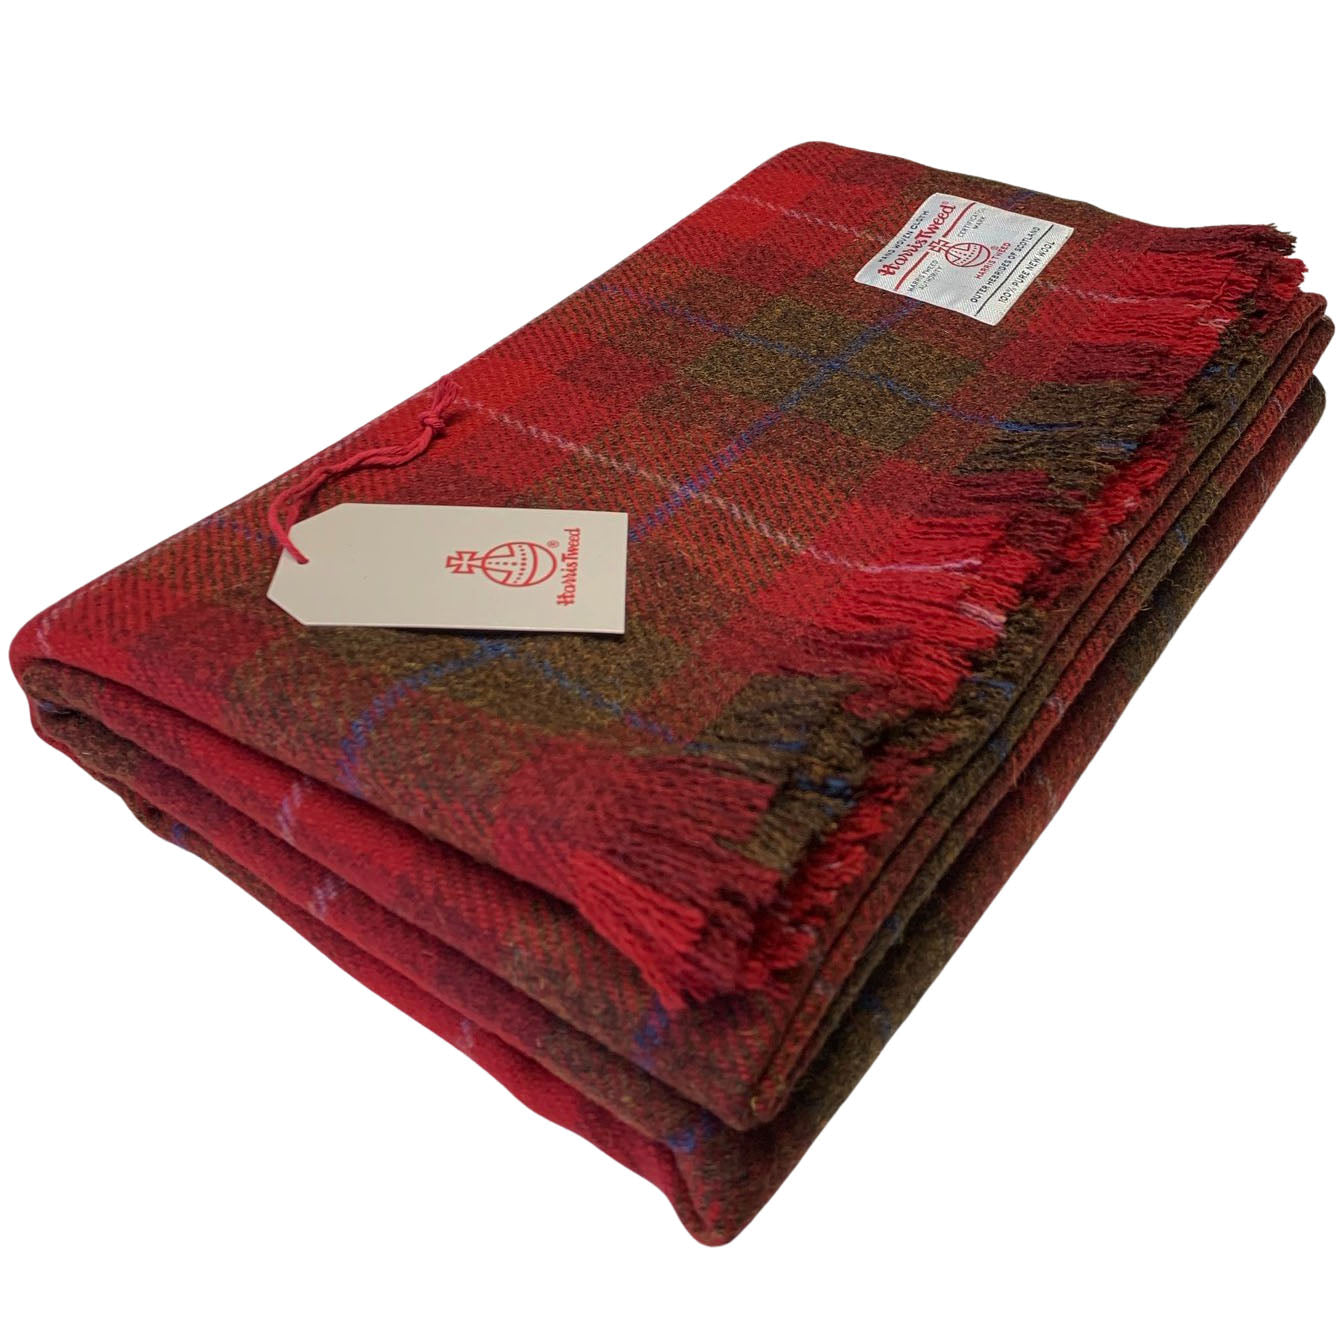 Harris Tweed Luxury Red with Brown Tartan Extra Large Throw Blanket